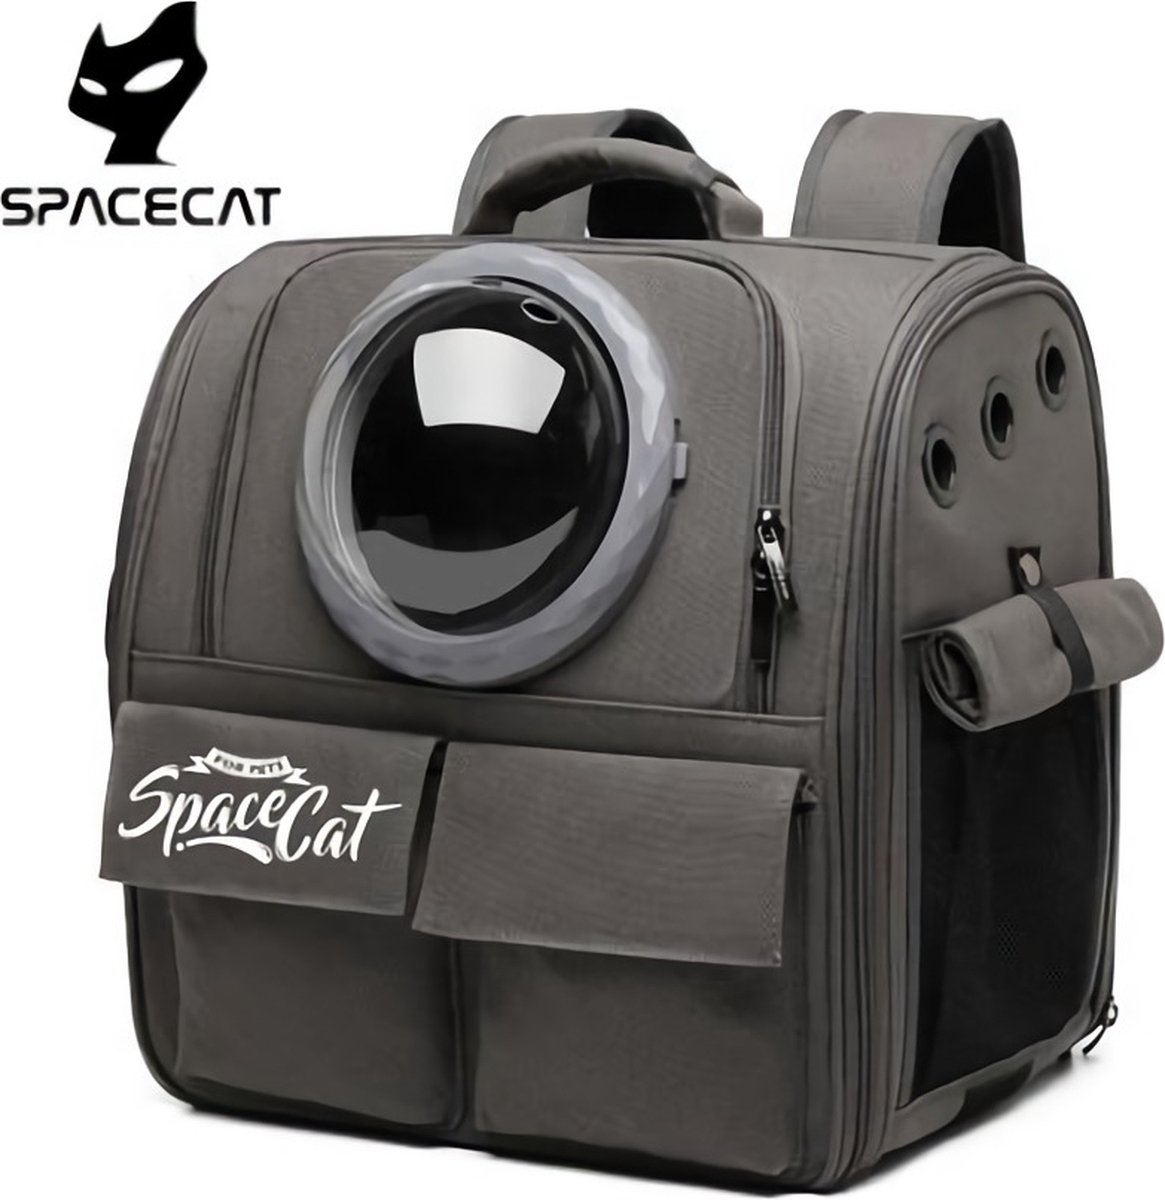 Space Cat -  Rugzak - Draagtas - Reistas - Carrier - Transporttas - Huisdier - Katten - Kleine Honden  - Zwart - Space-Cat